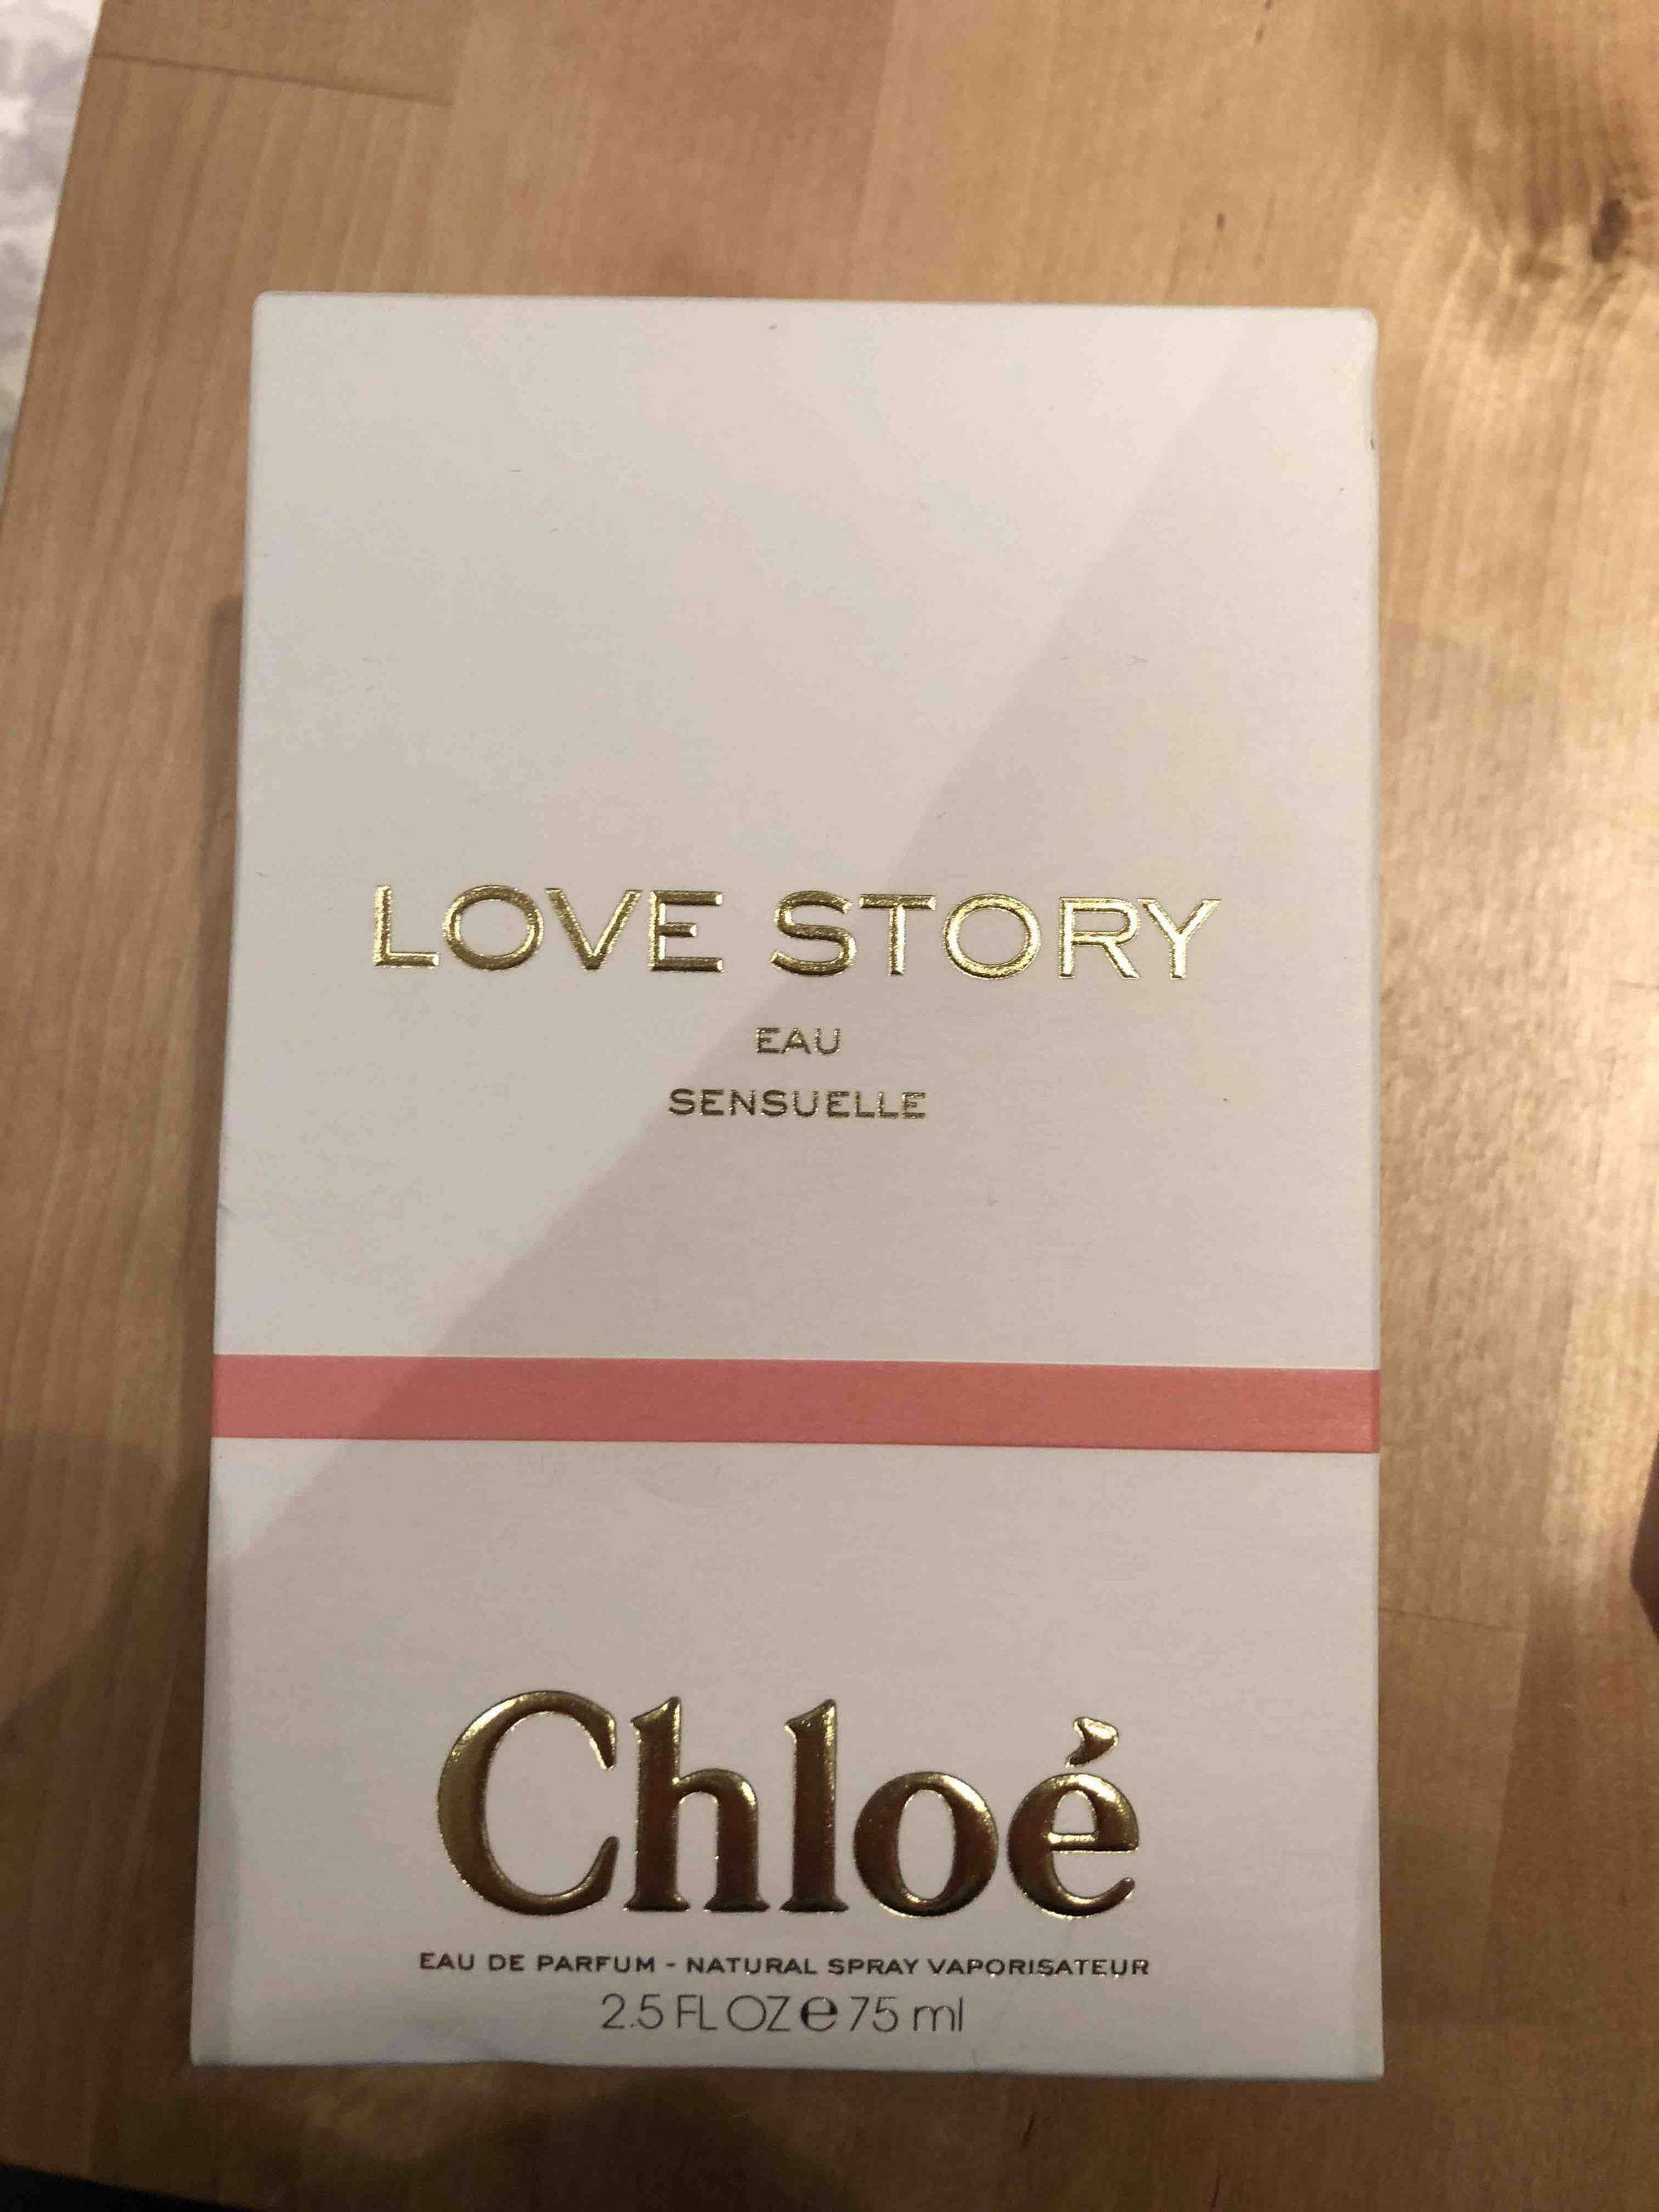 CHLOÉ - Love story Eau sensuelle - Eau de parfum